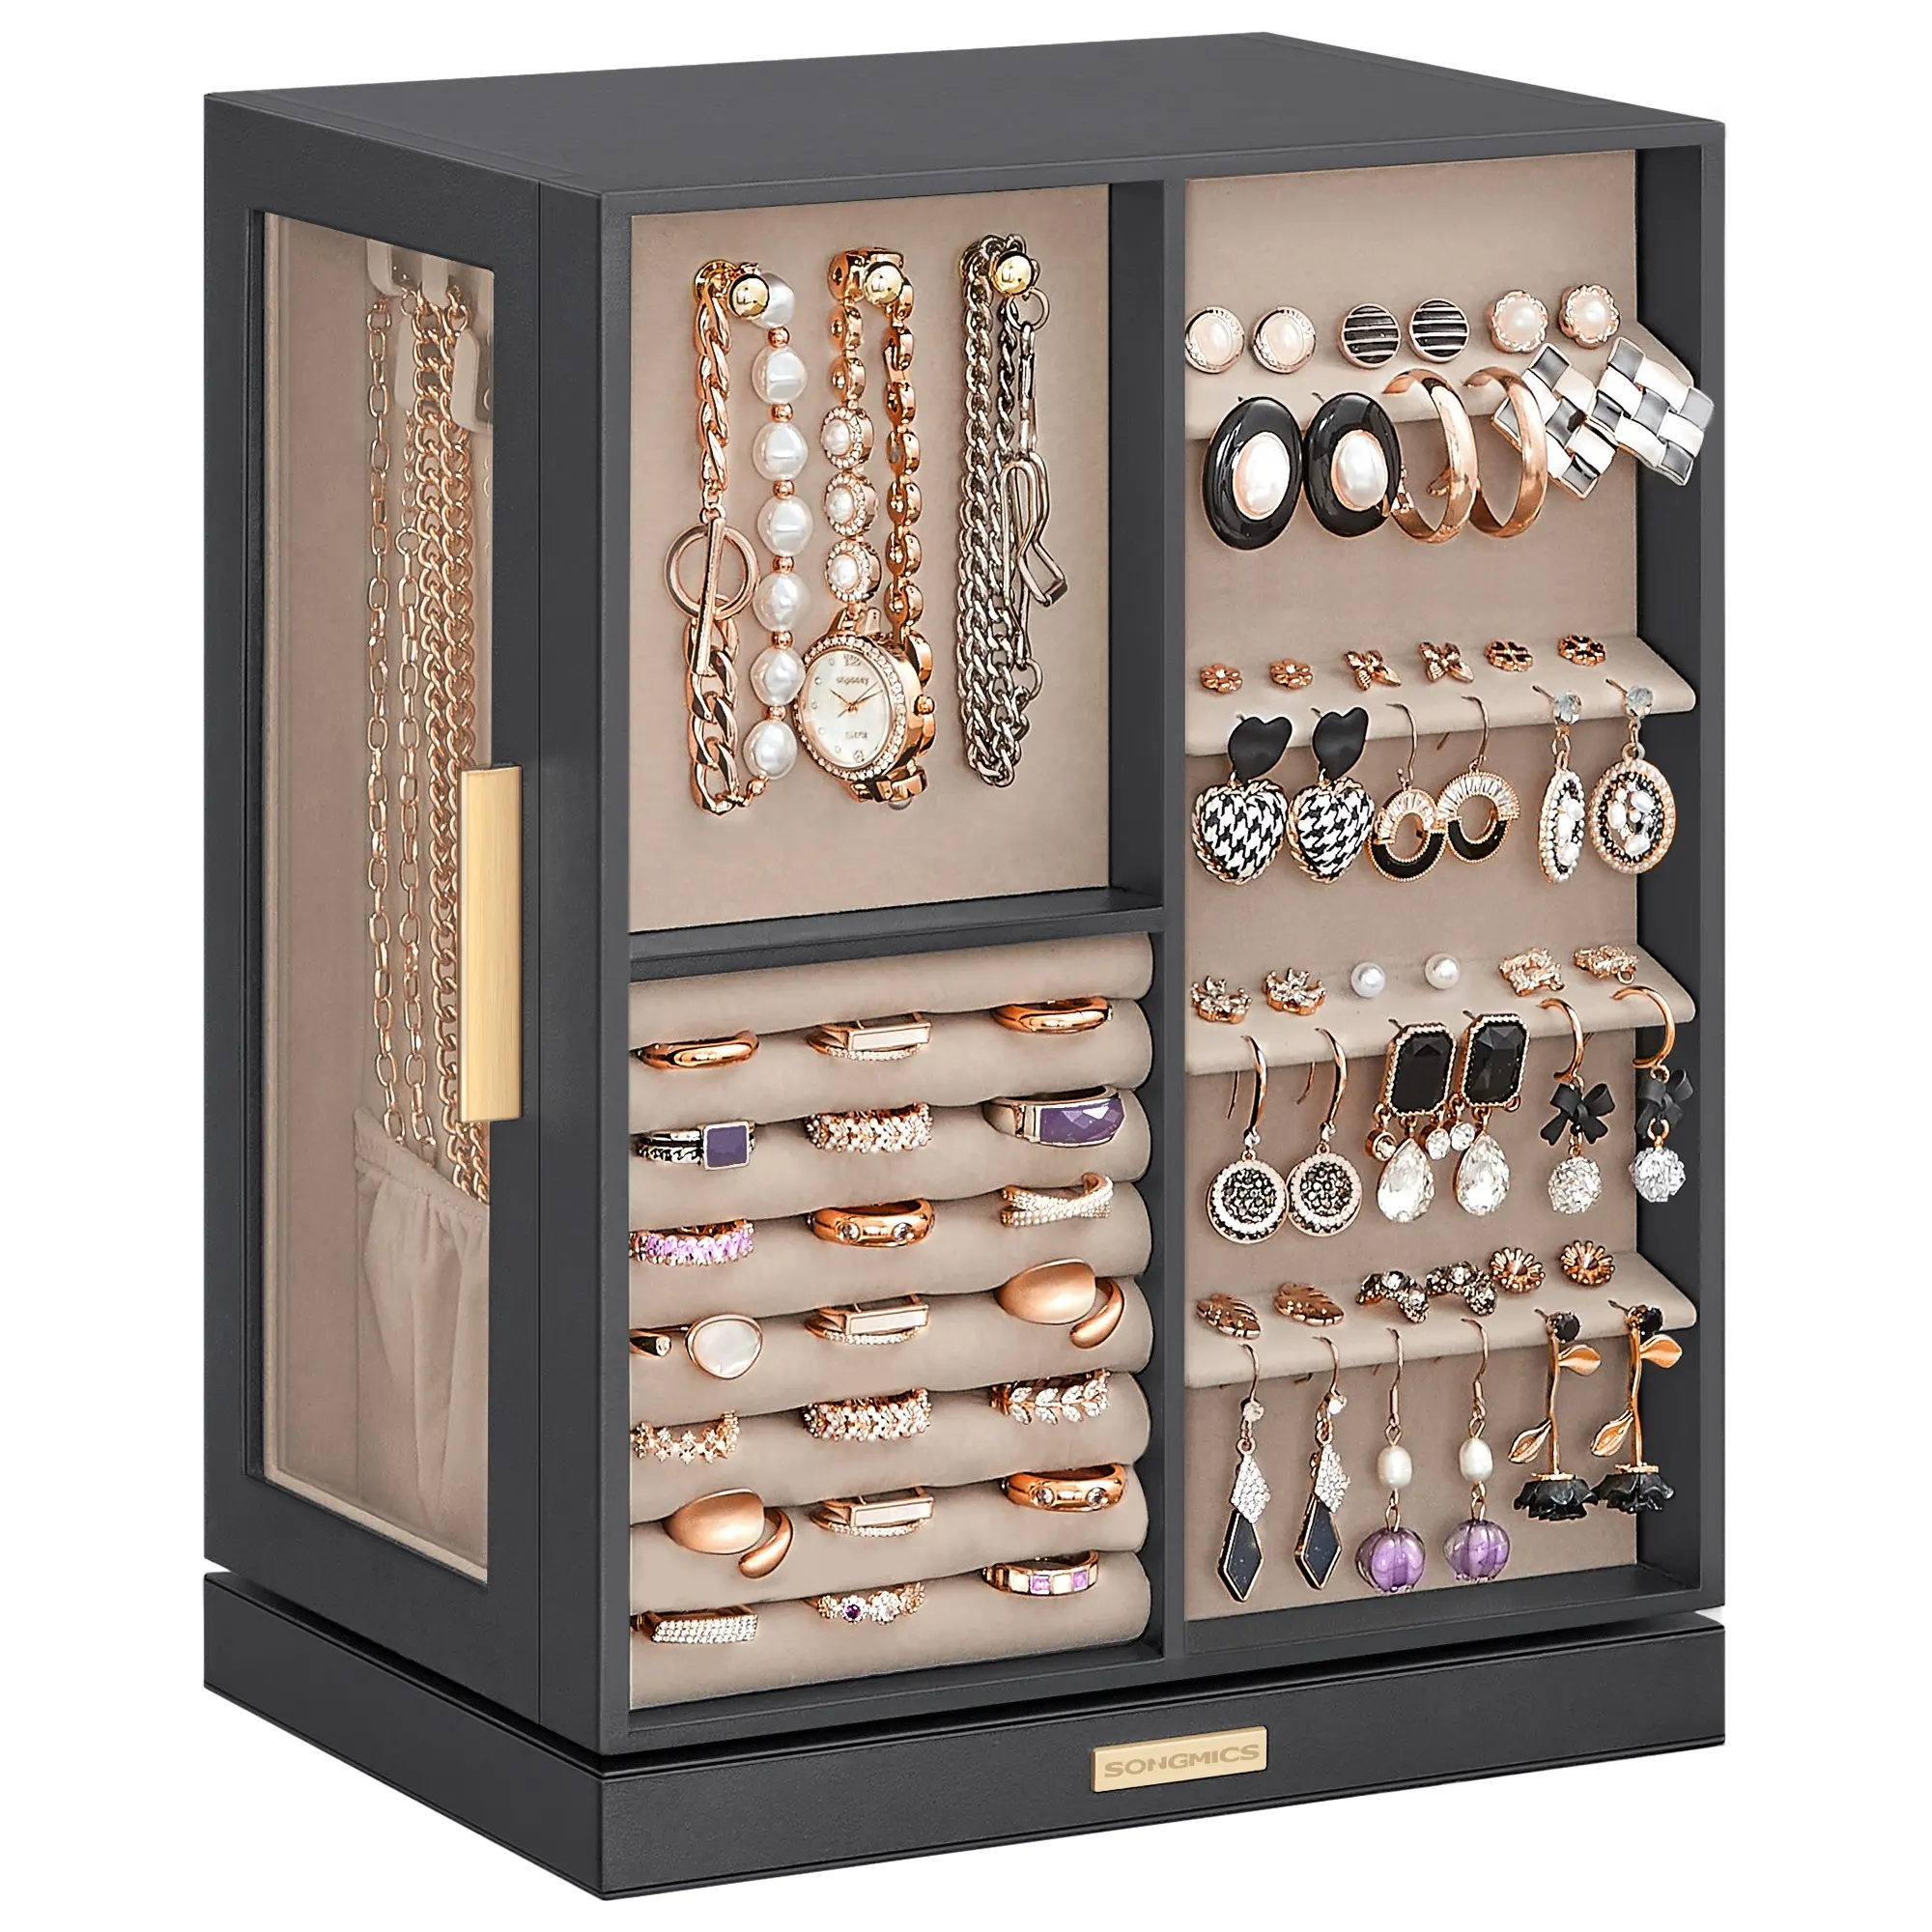 SONGMICS Boîte à bijoux 360 Rotation Open Design Bijoux Vitrine Organisateur de bijoux avec 5 tiroirs